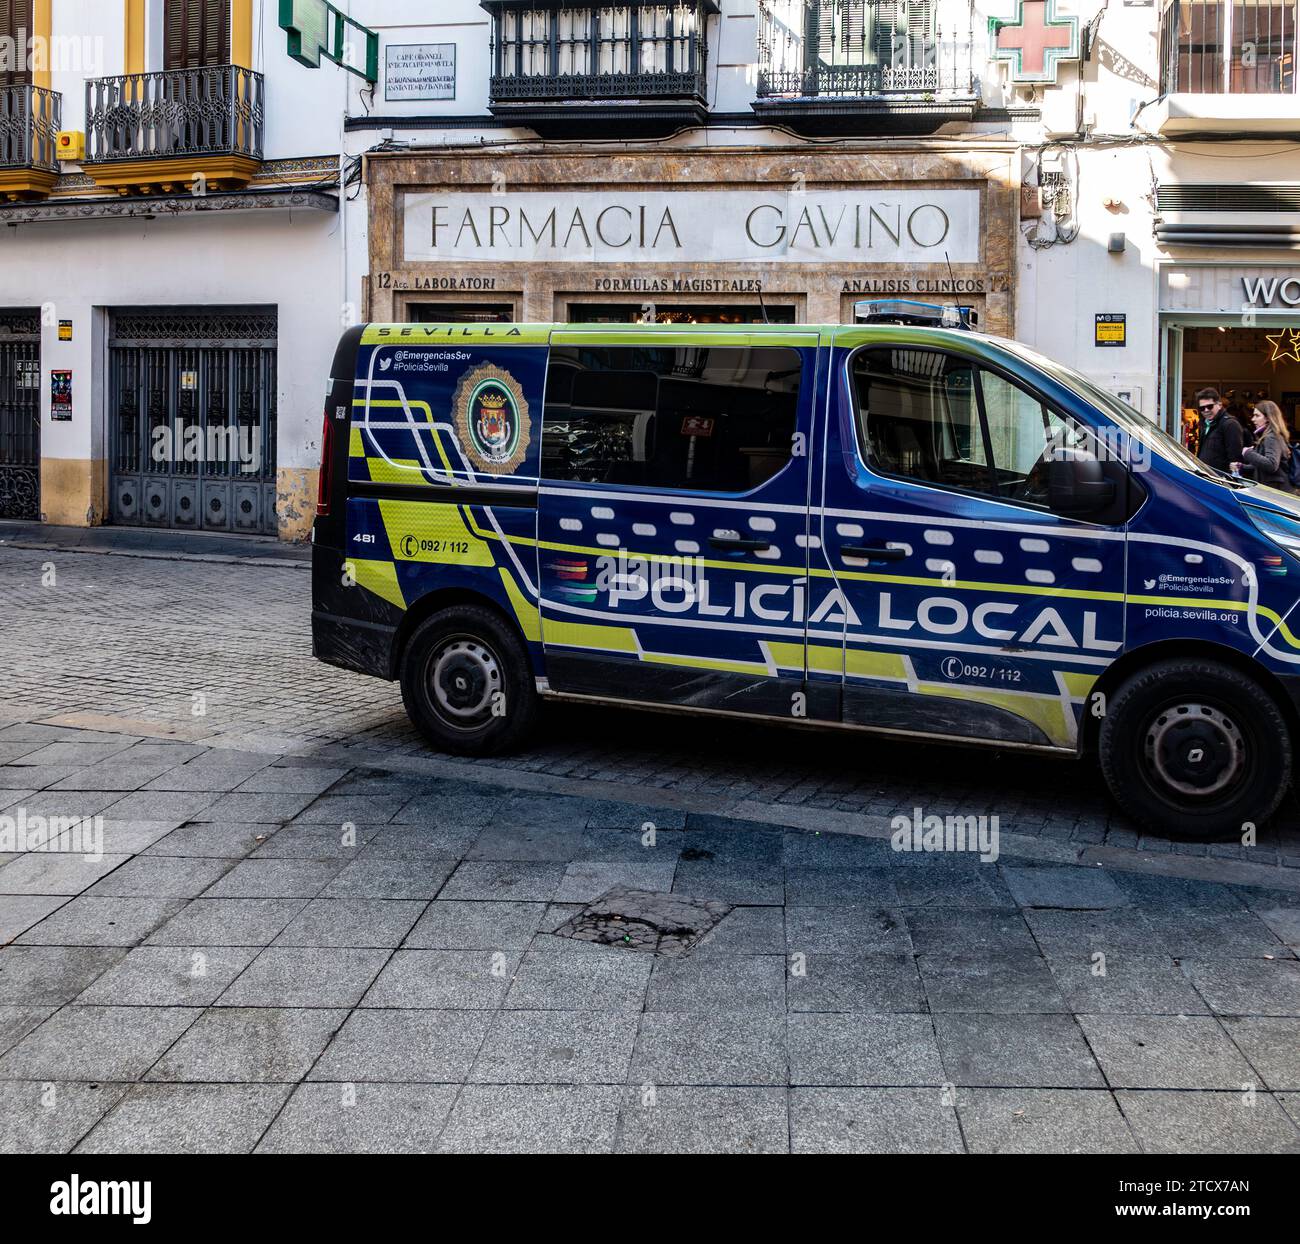 Policia Local, pulmino di pattuglia della polizia, sulla strada di Siviglia, Spagna. Foto Stock